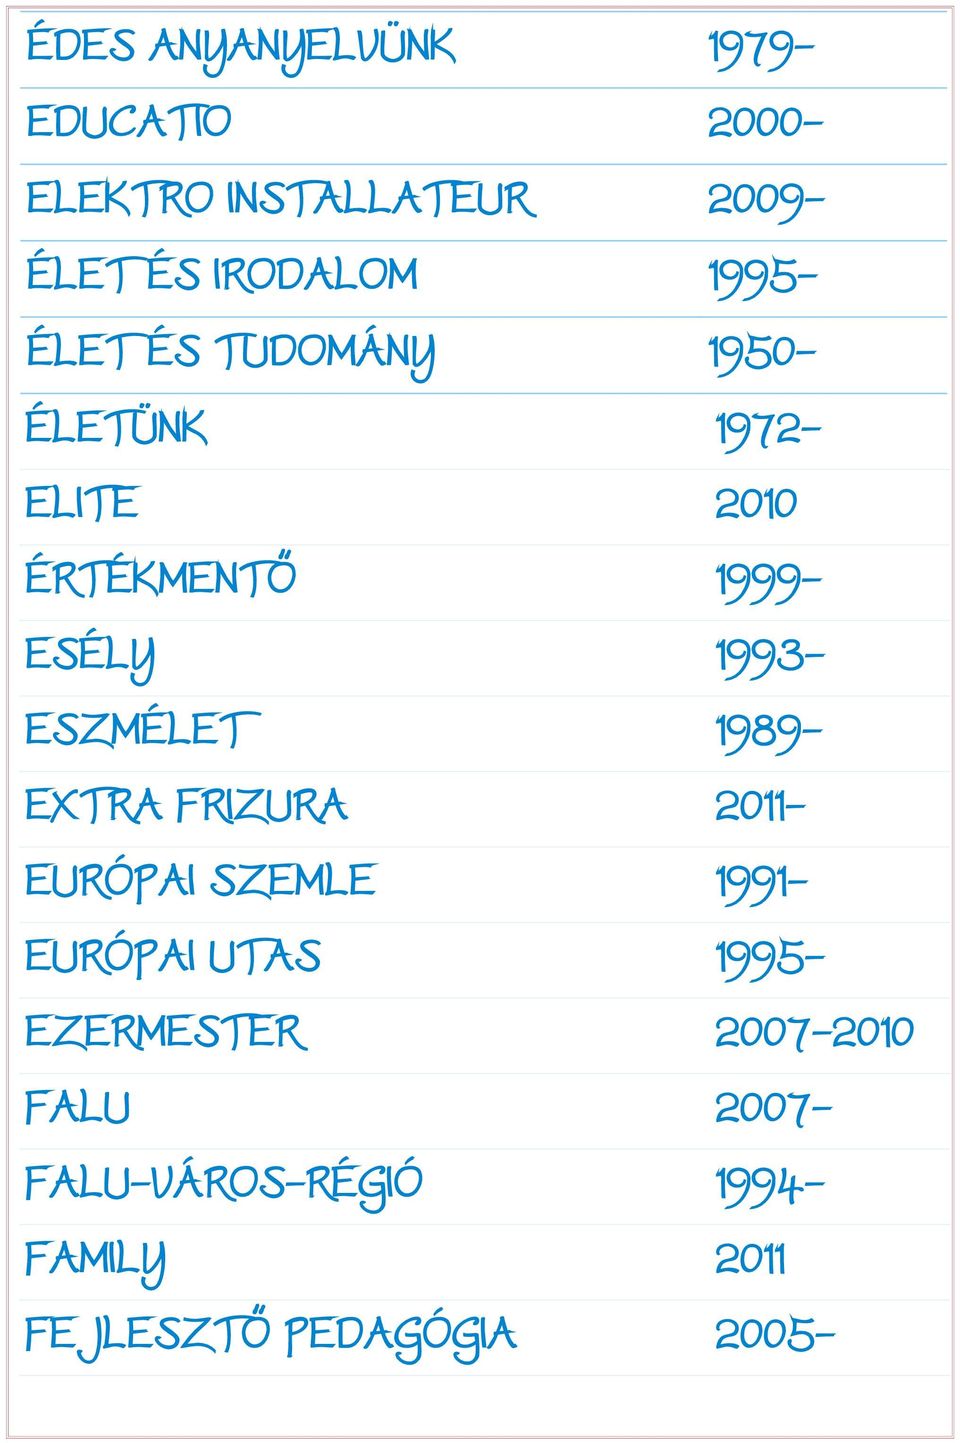 ESZMÉLET 1989- EXTRA FRIZURA 2011- EURÓPAI SZEMLE 1991- EURÓPAI UTAS 1995-